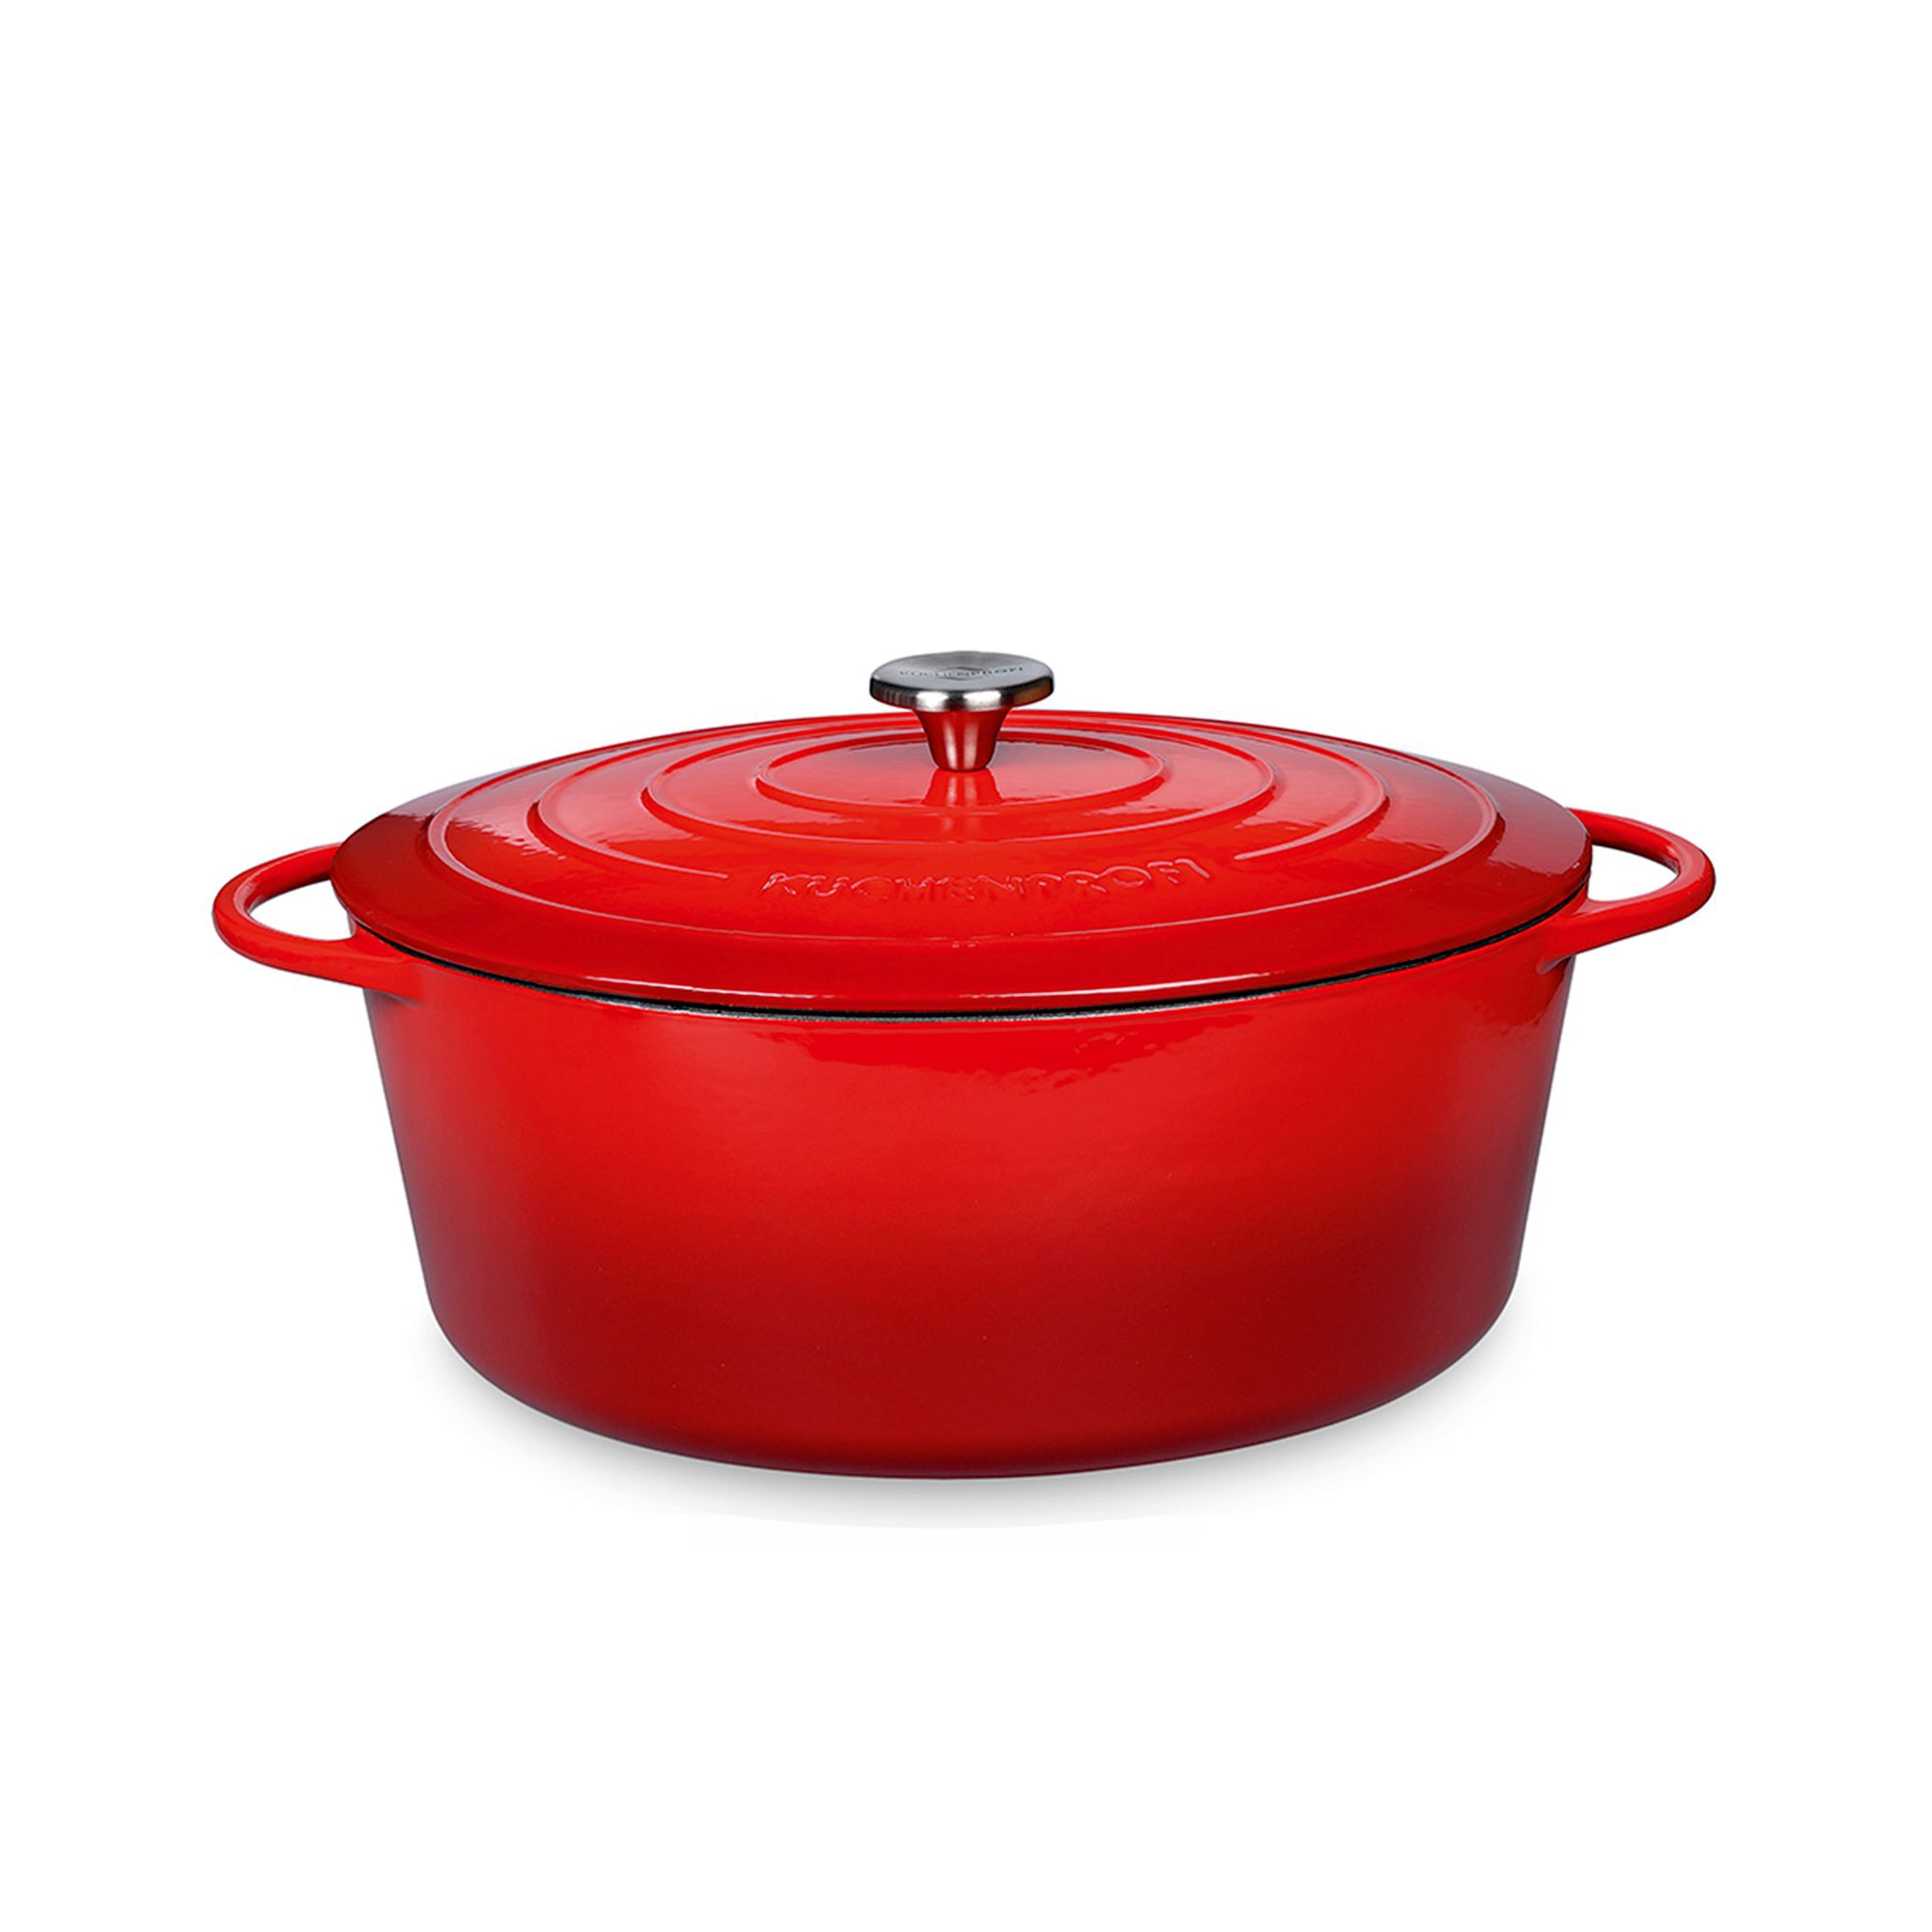 Küchenprofi - PROVENCE - ovaler Bratentopf - red - 40 cm